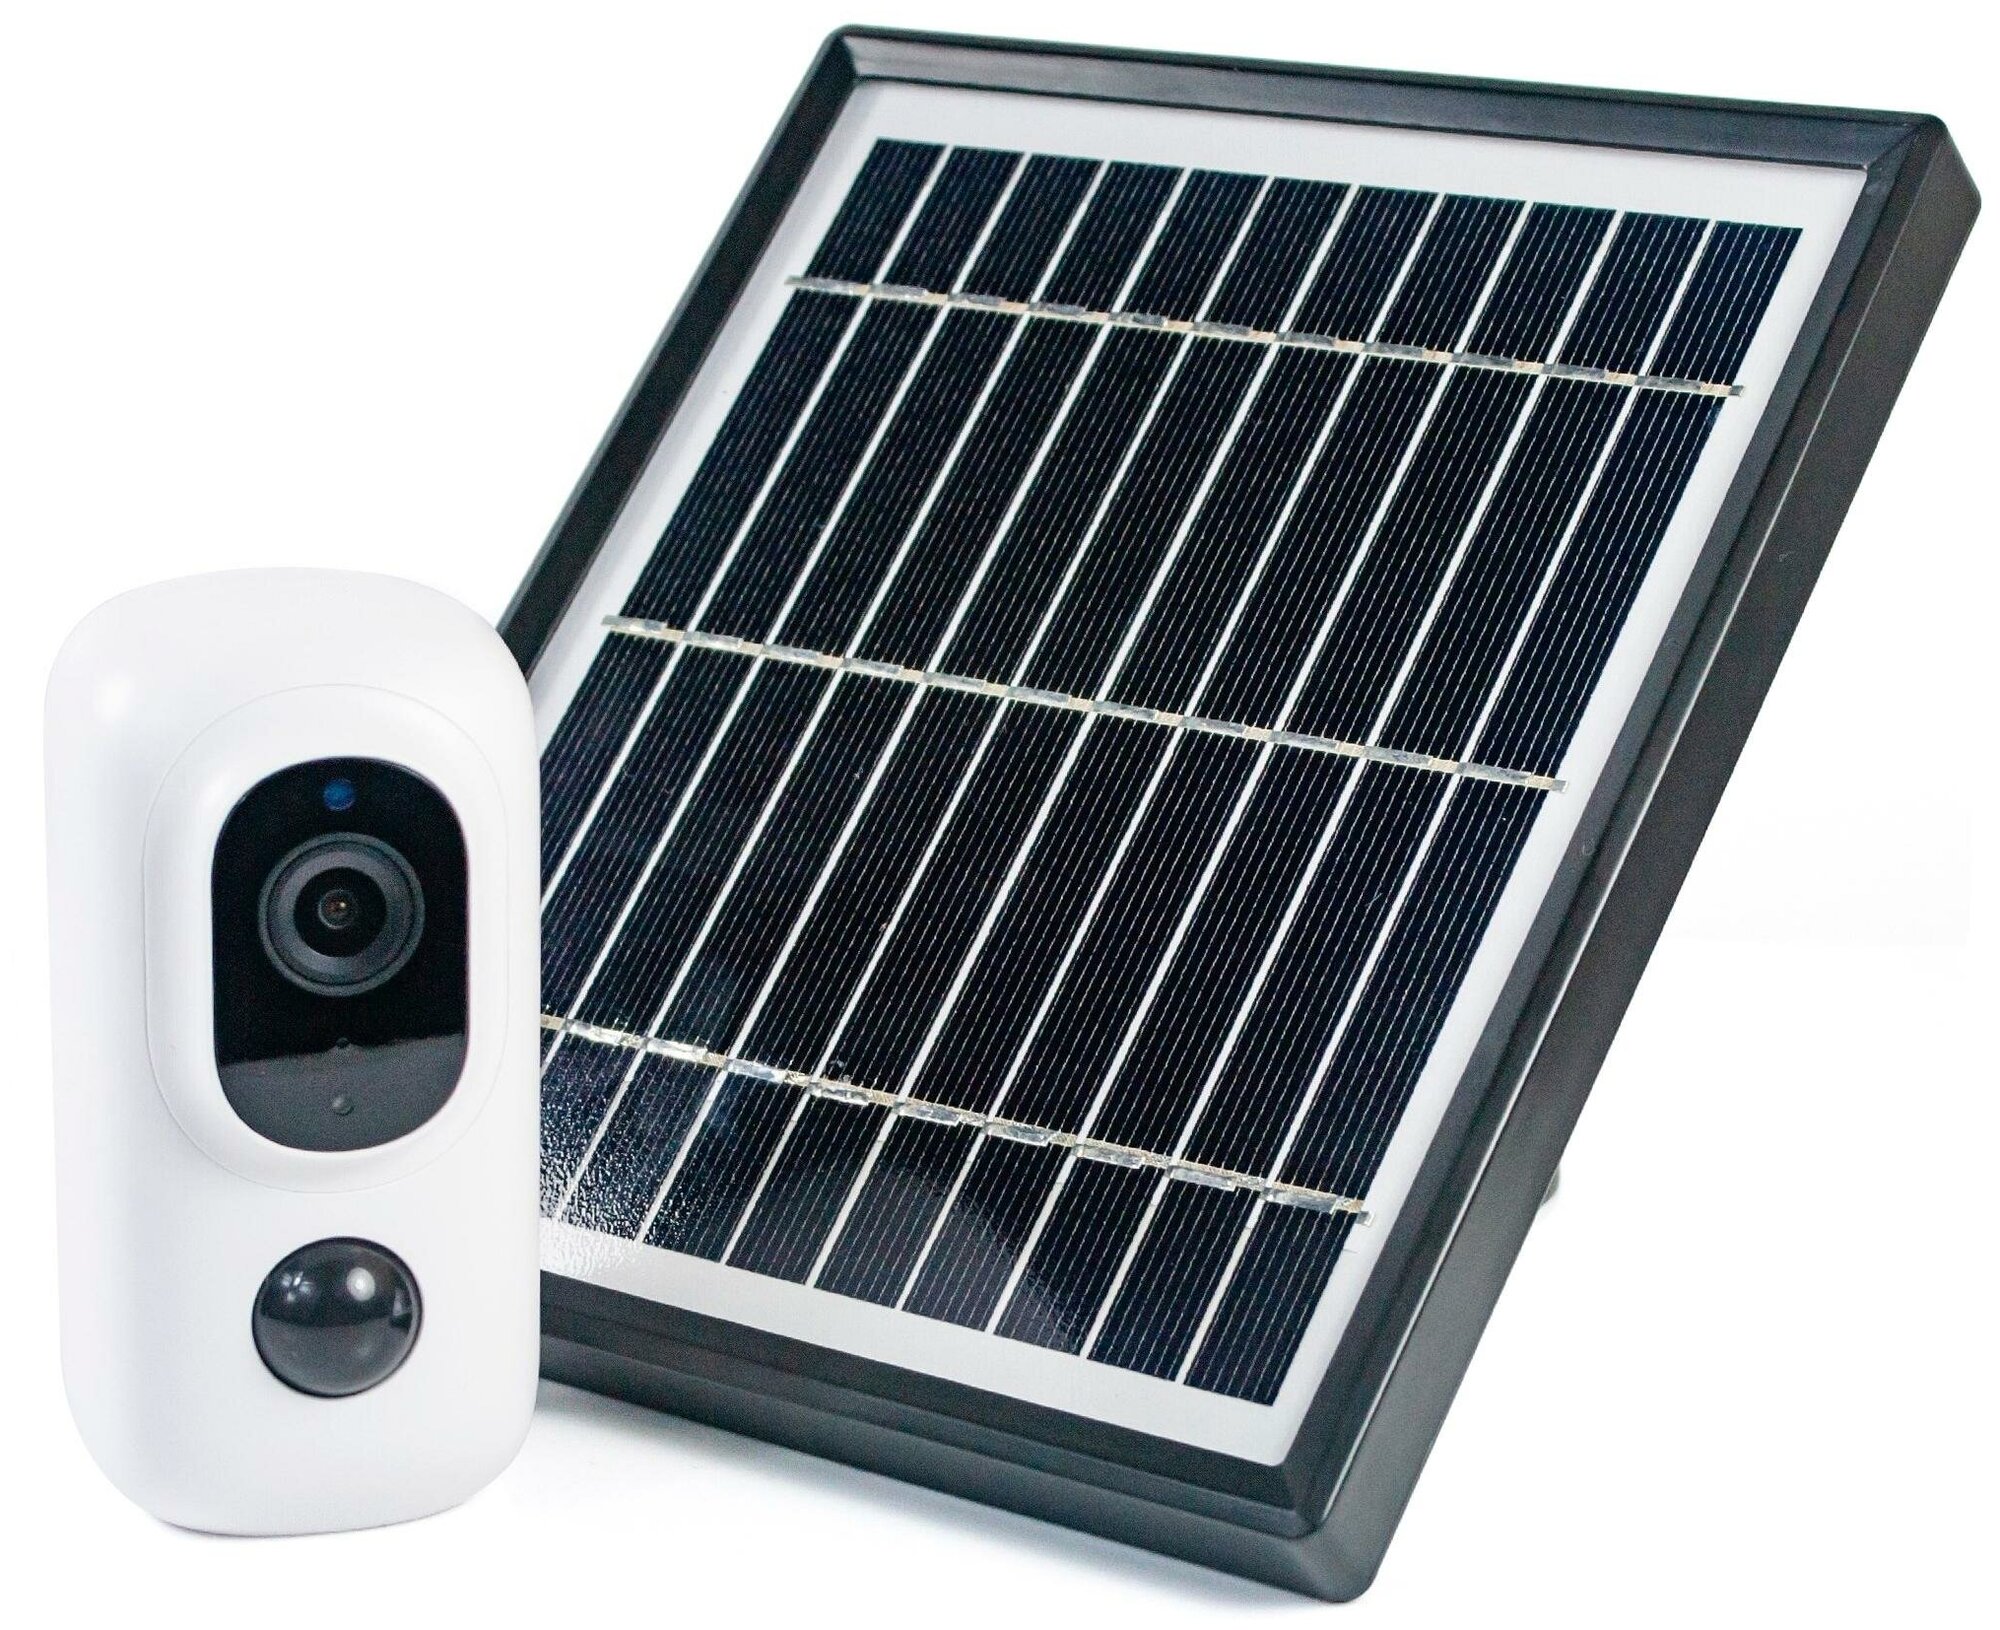 4G-камера с солнечной батареей Link-Solar QH 15G 4G (Z74472QH1) - GSM сигнализация с камерой для дома, камера 4G